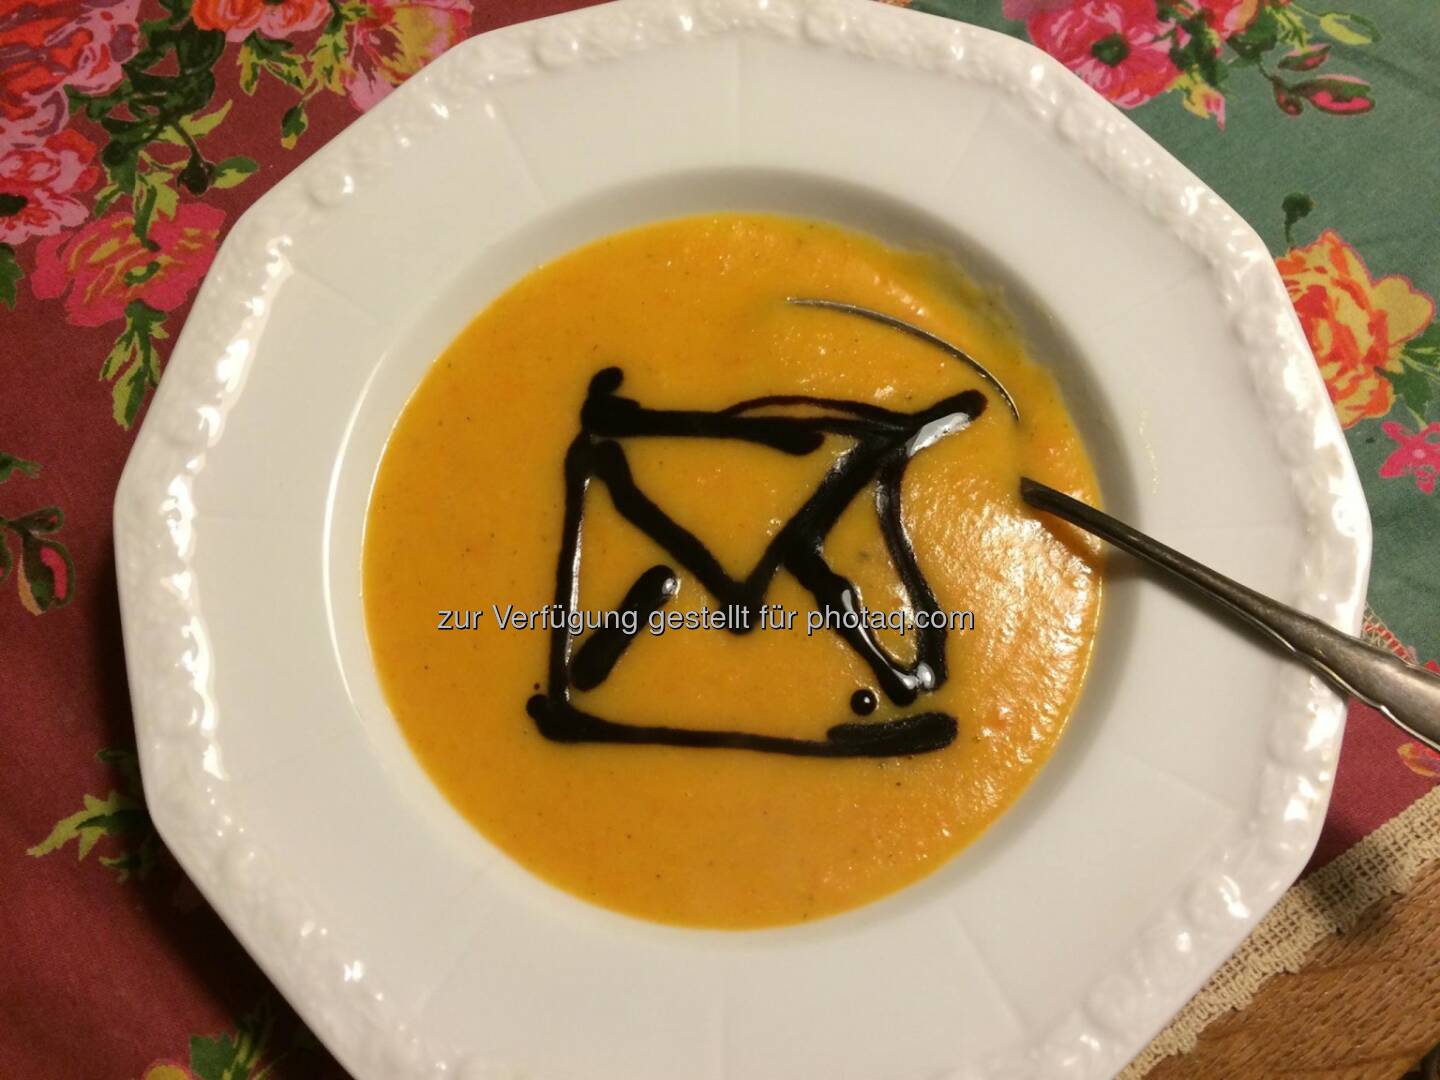 Deutsche Post: Passend zum „Tag der gelben Suppe“ haben wir die Kochlöffel geschwungen. Jetzt lassen wir uns das Ergebnis schmecken. :-)  Source: http://facebook.com/deutschepost